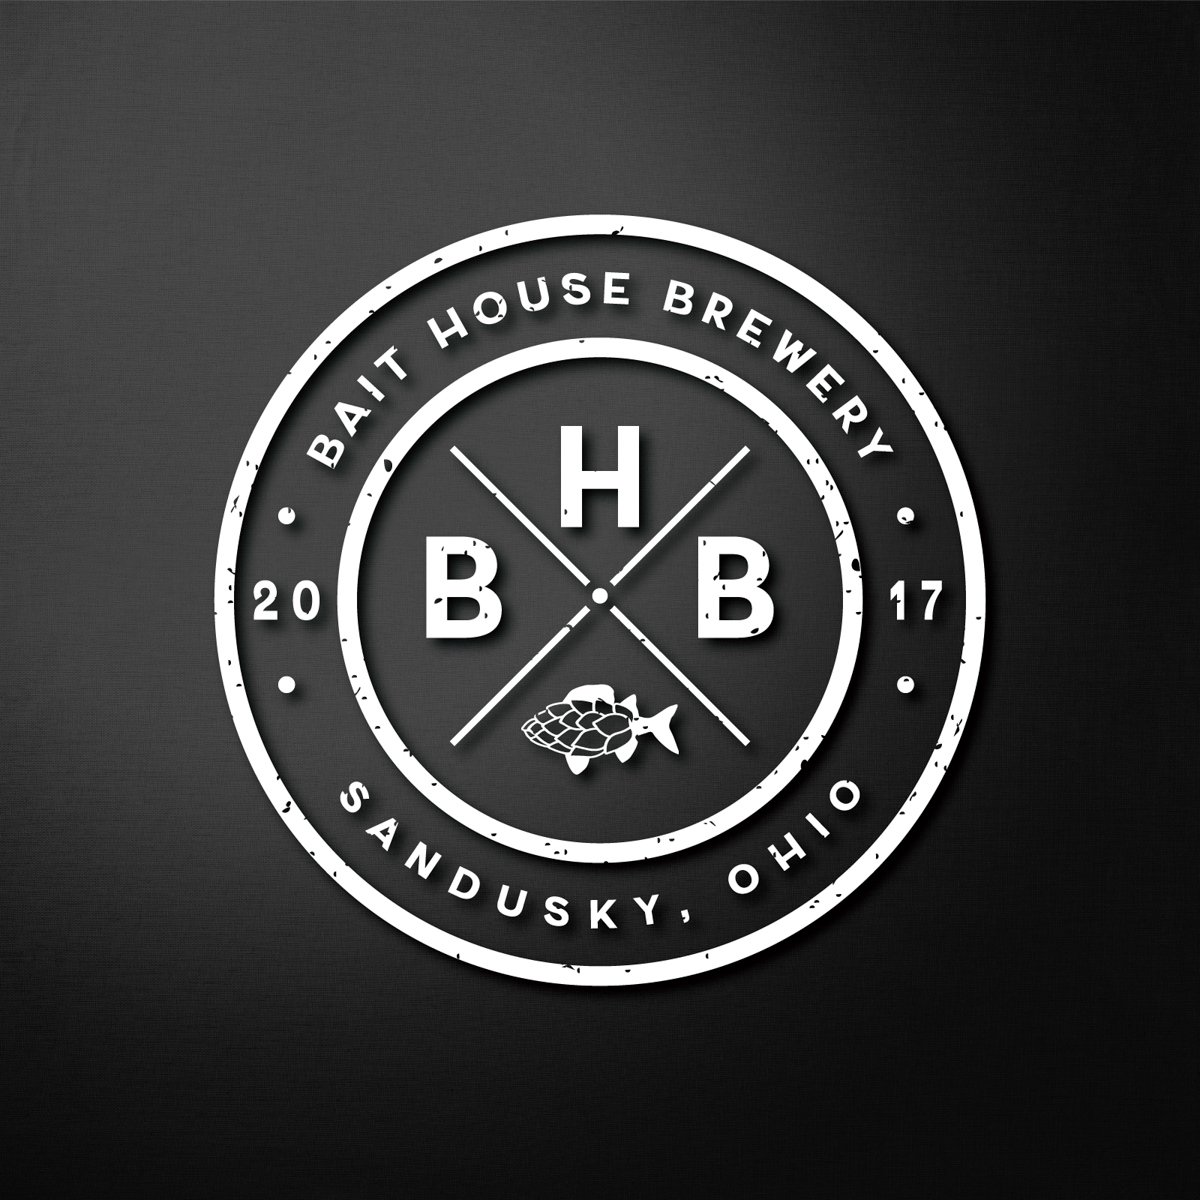 Secondary logo mark for BHB.